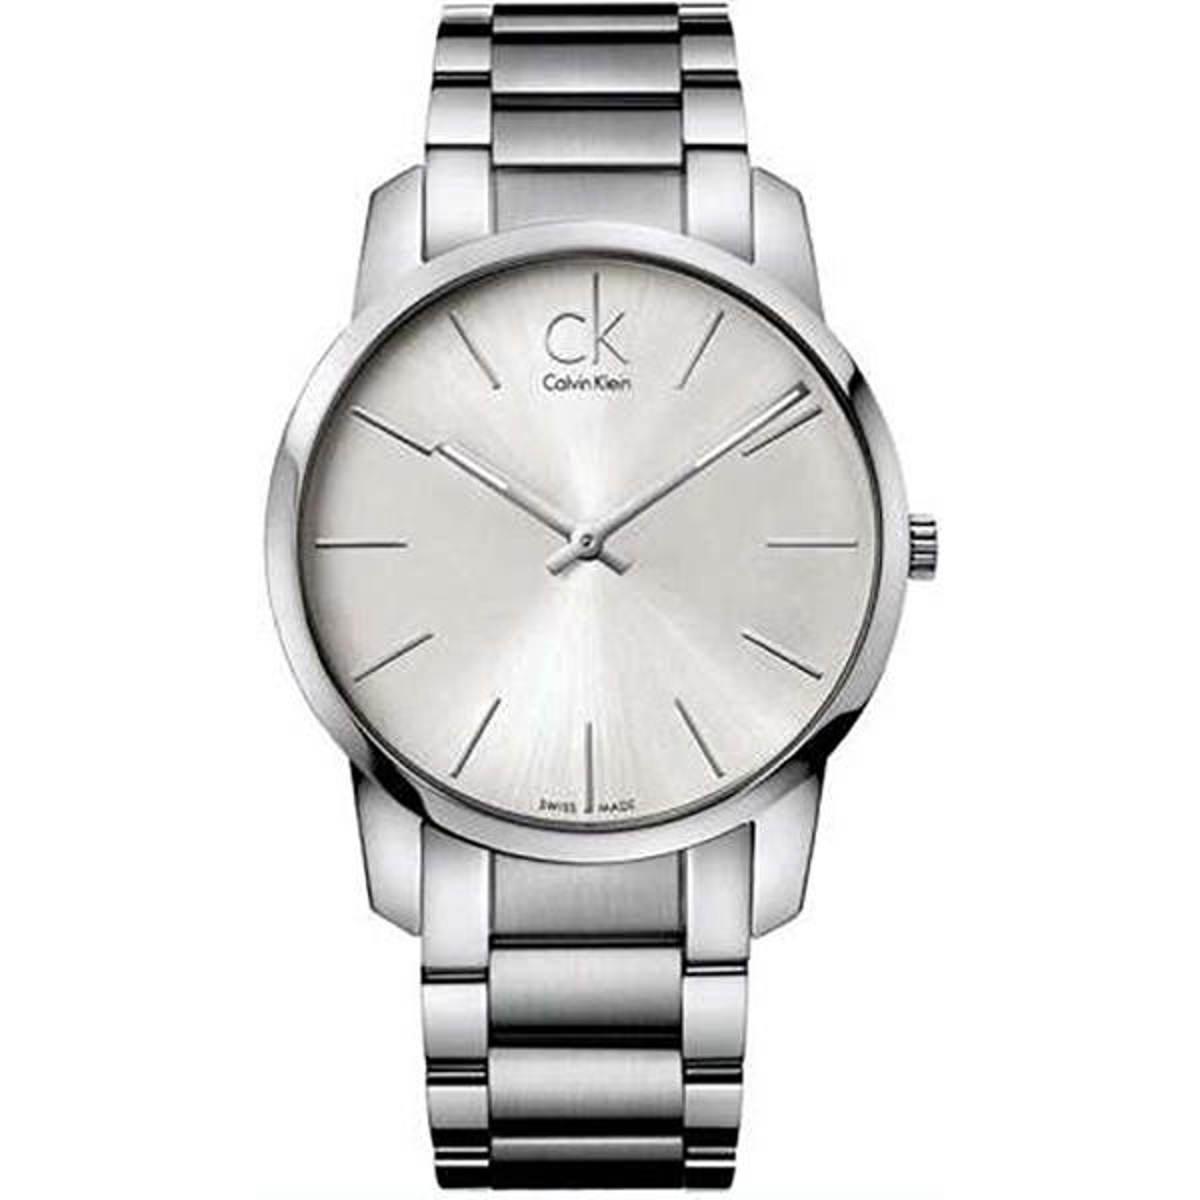 CK watch for men k2g21126 | Watches Online Store - Trias Shop